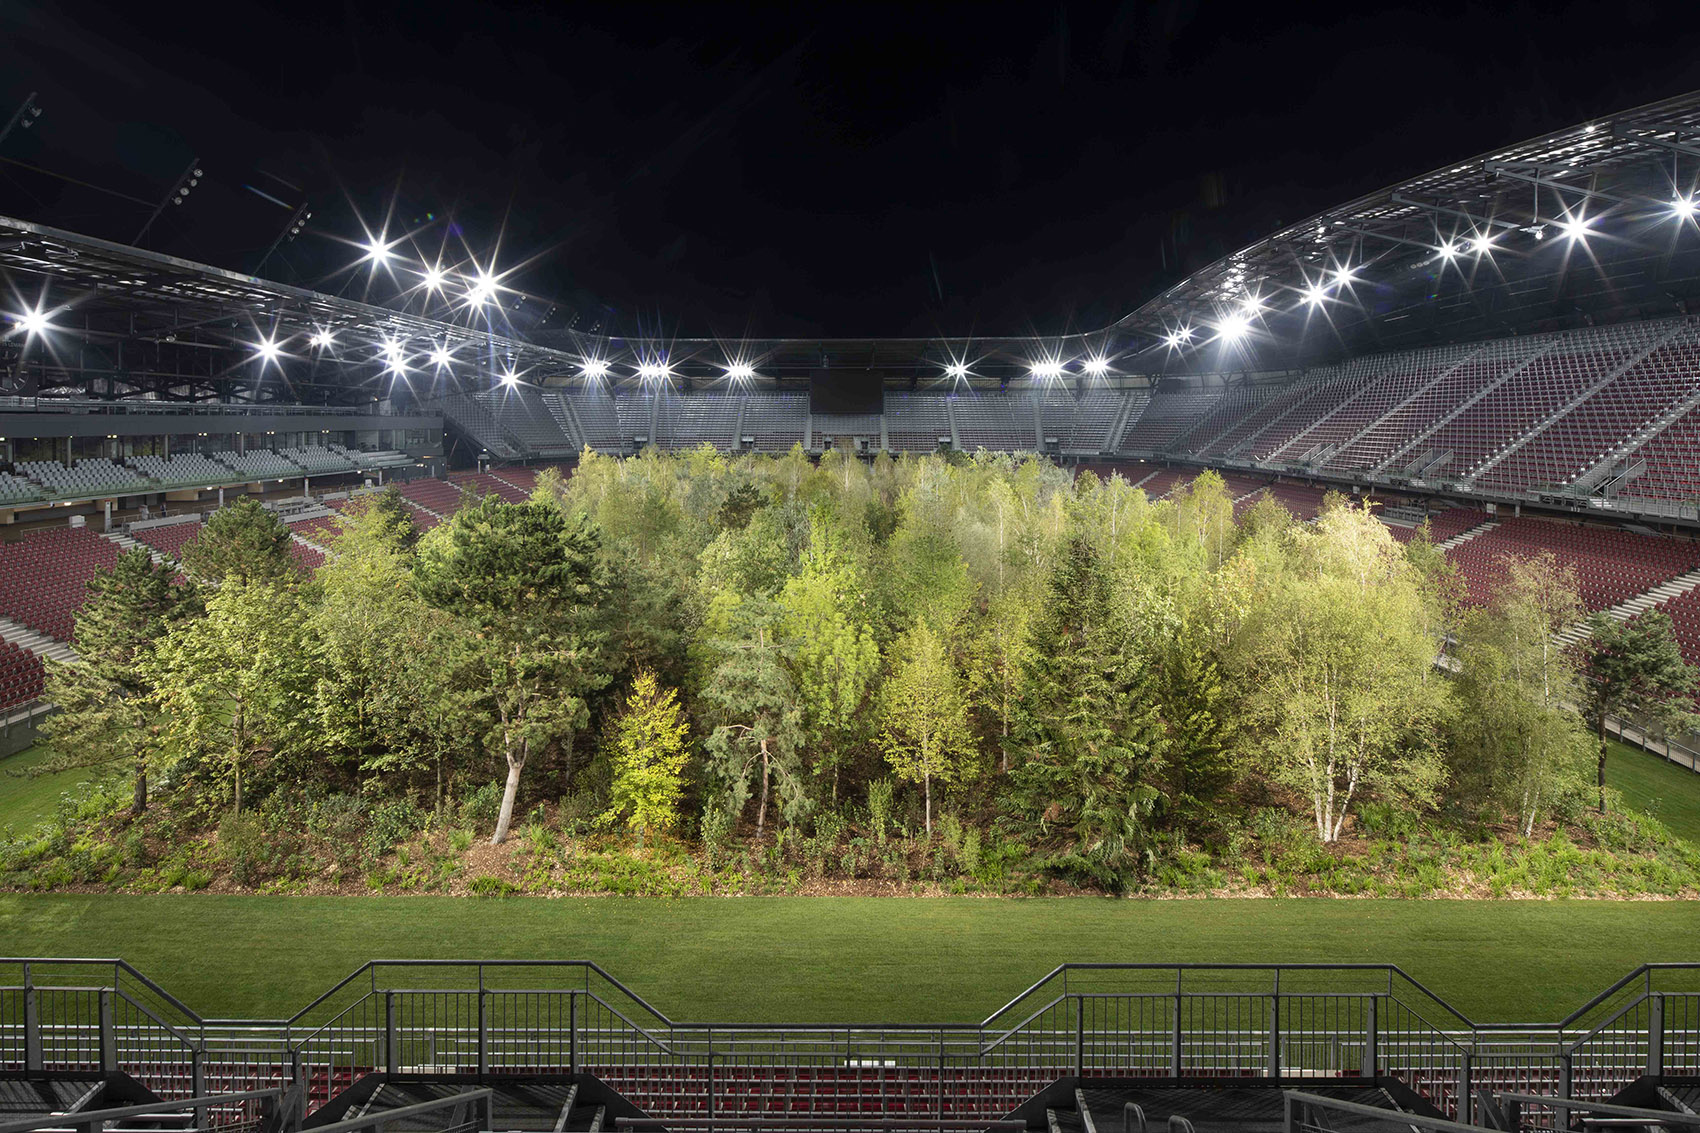 “致森林——自然不倦的魅力”展览，奥地利/足球场变身欧洲中部森林-20